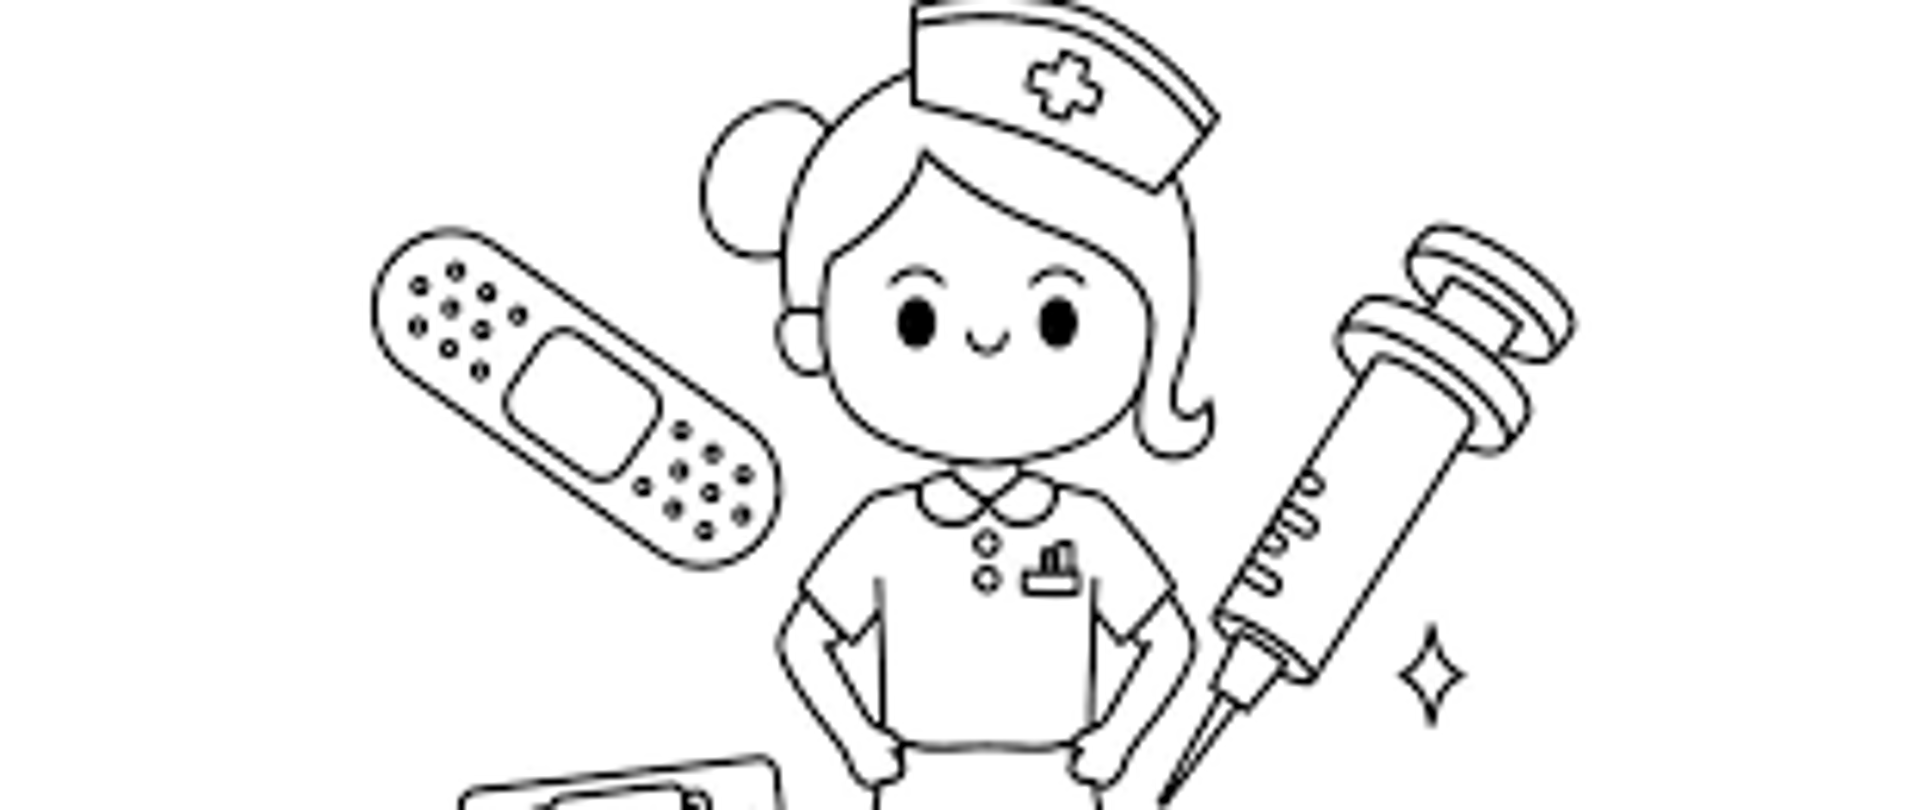 Zdjęcie przedstawia pielęgniarkę i jej akcesoria